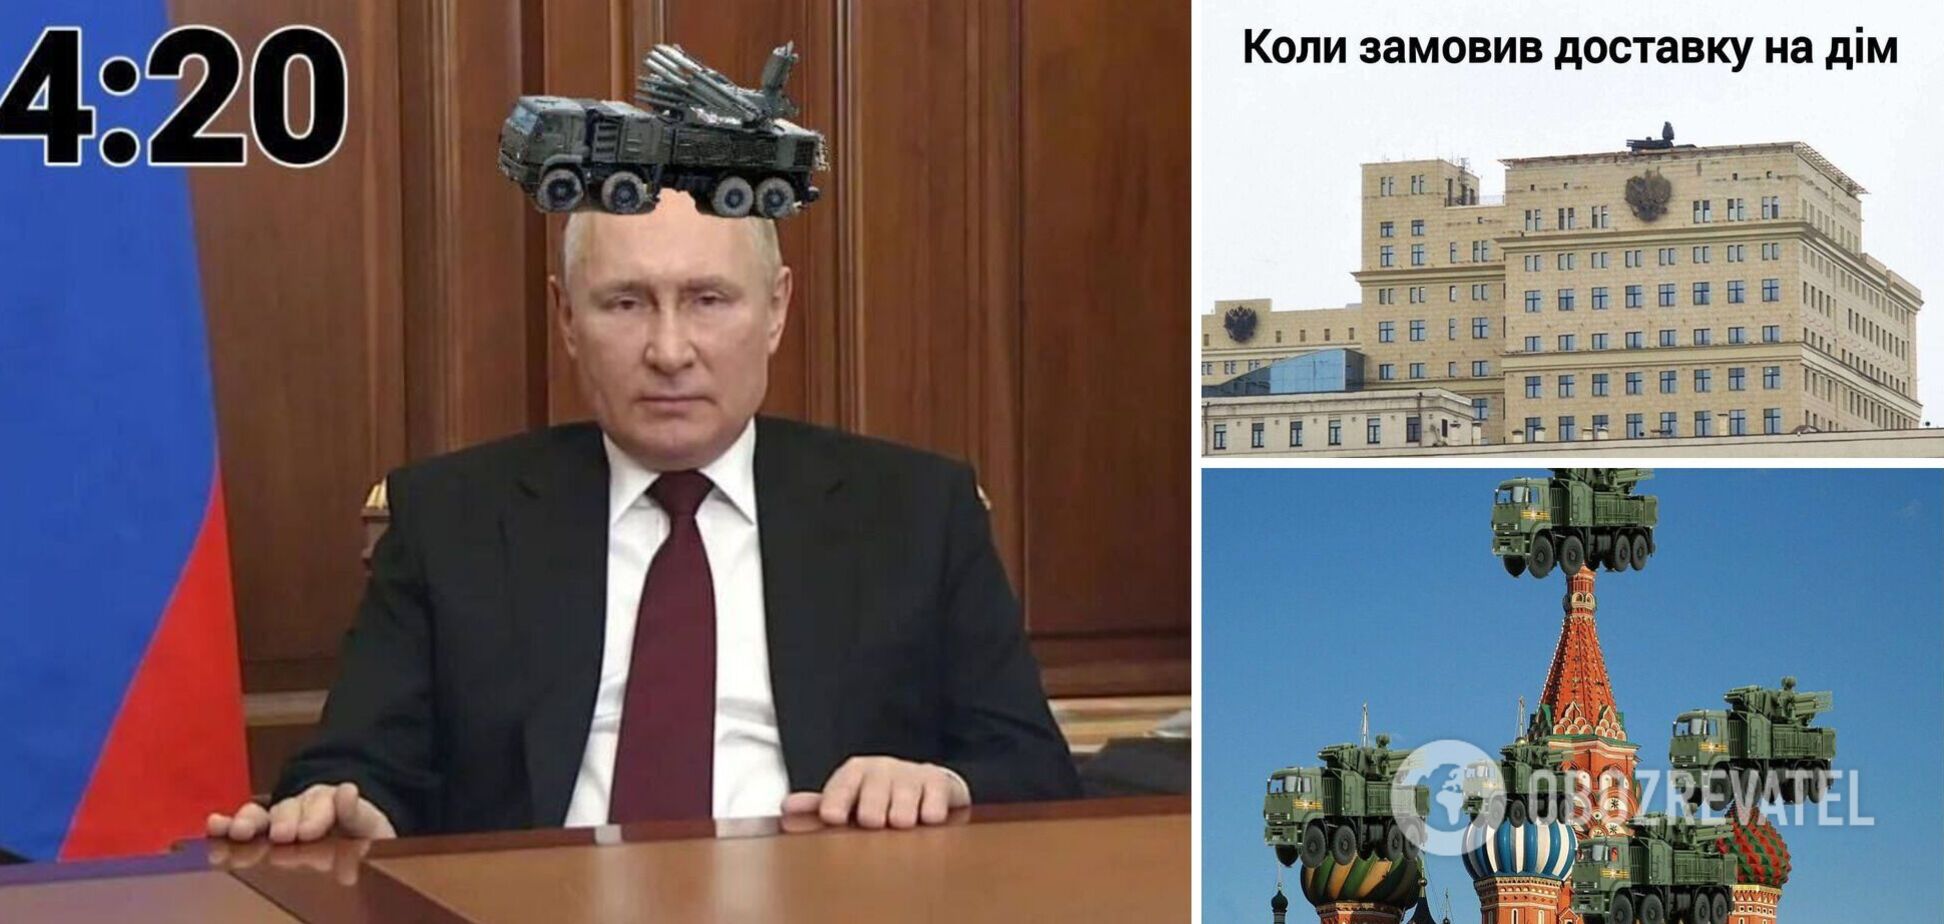 'Все идет по плану': в сети прокатилась волна мемов и фотожаб после размещения ПВО в центре Москвы. Фото